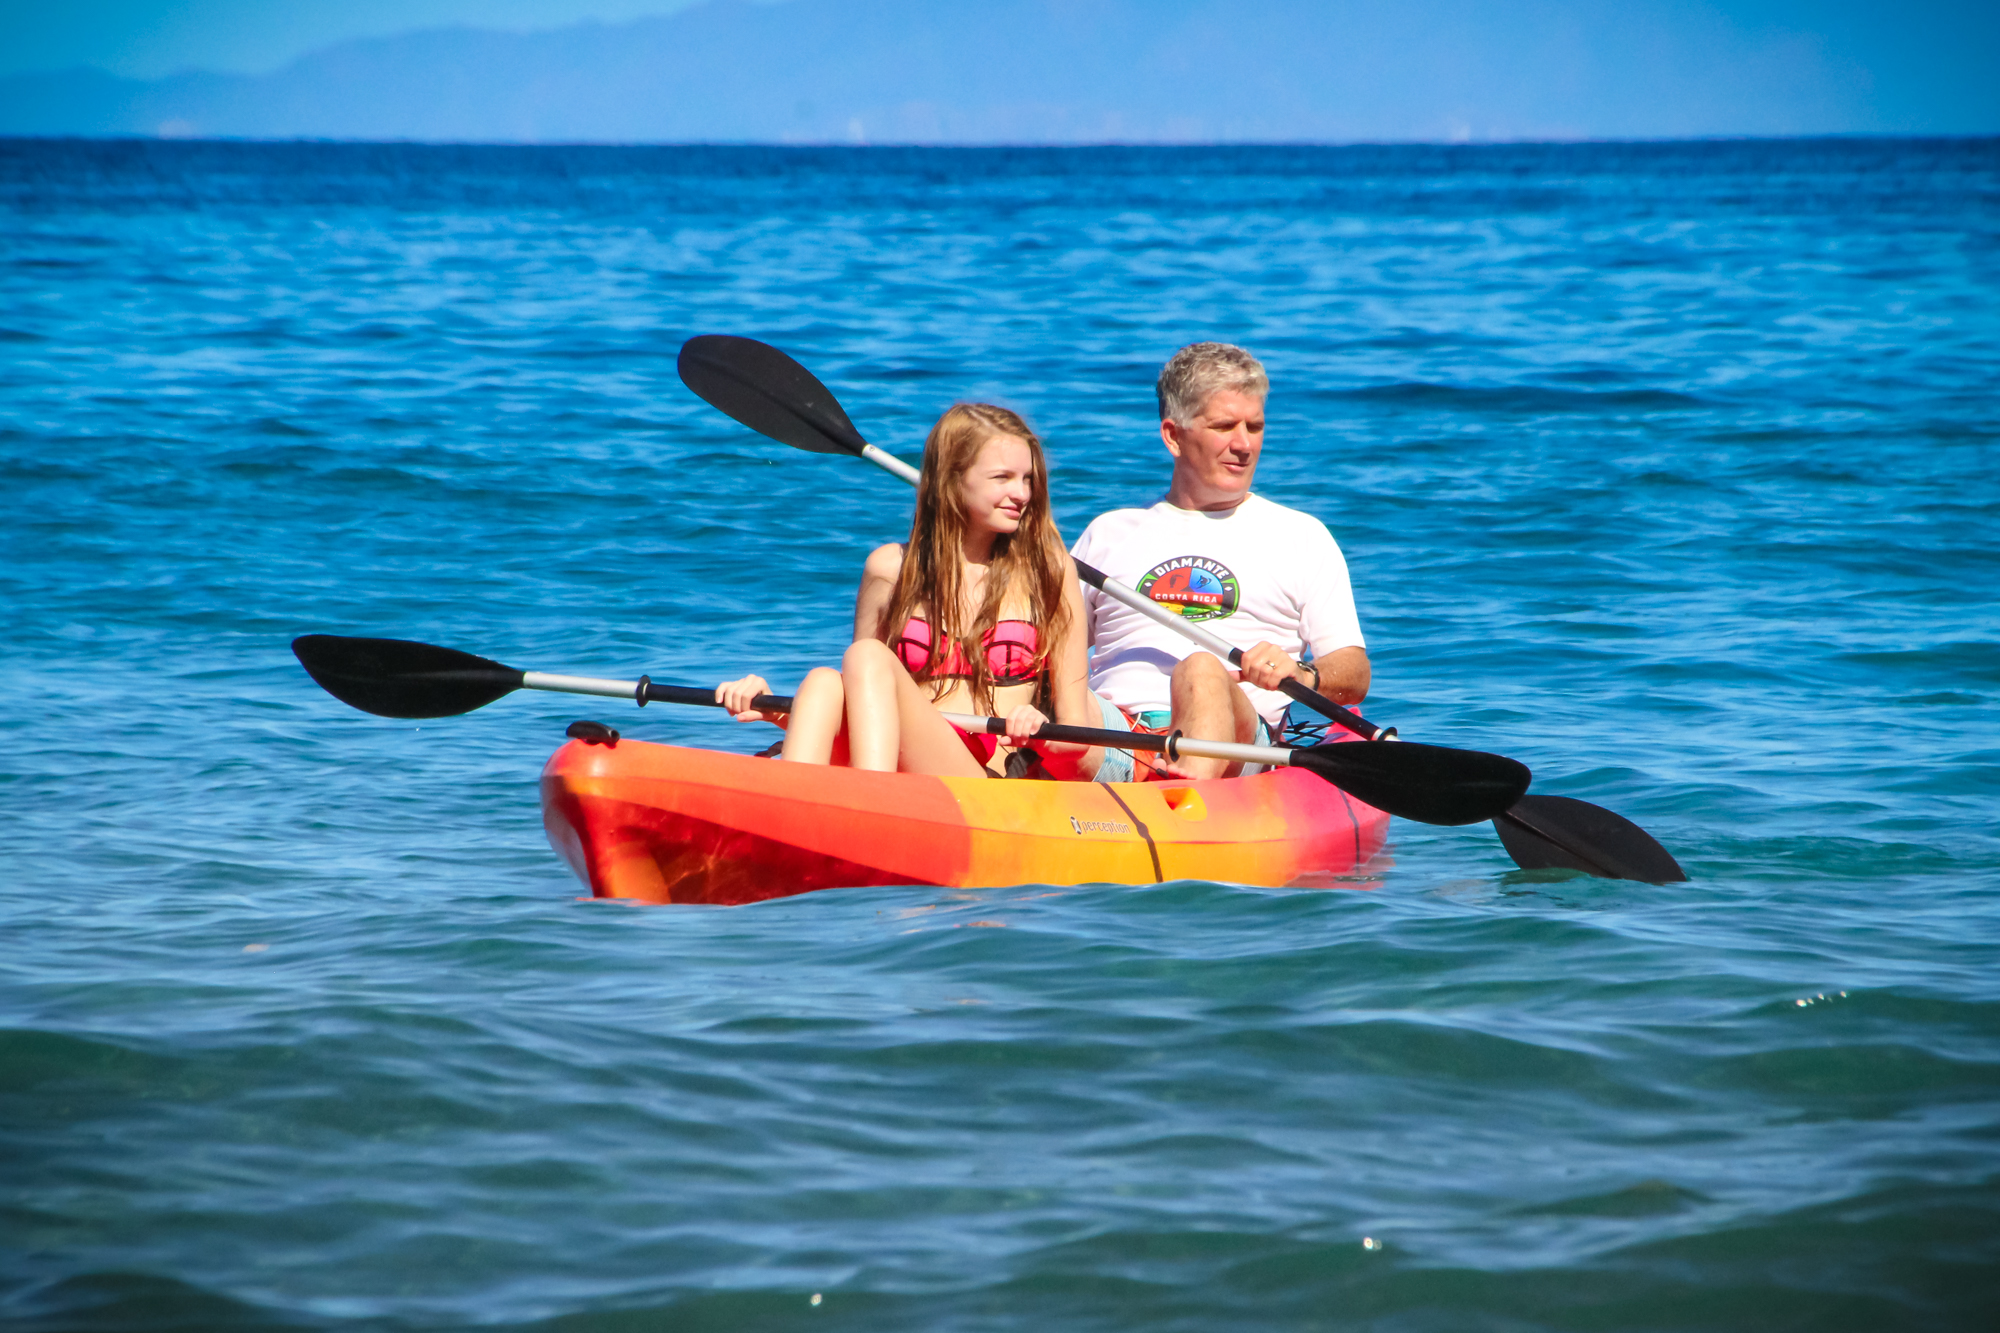 family kayaking